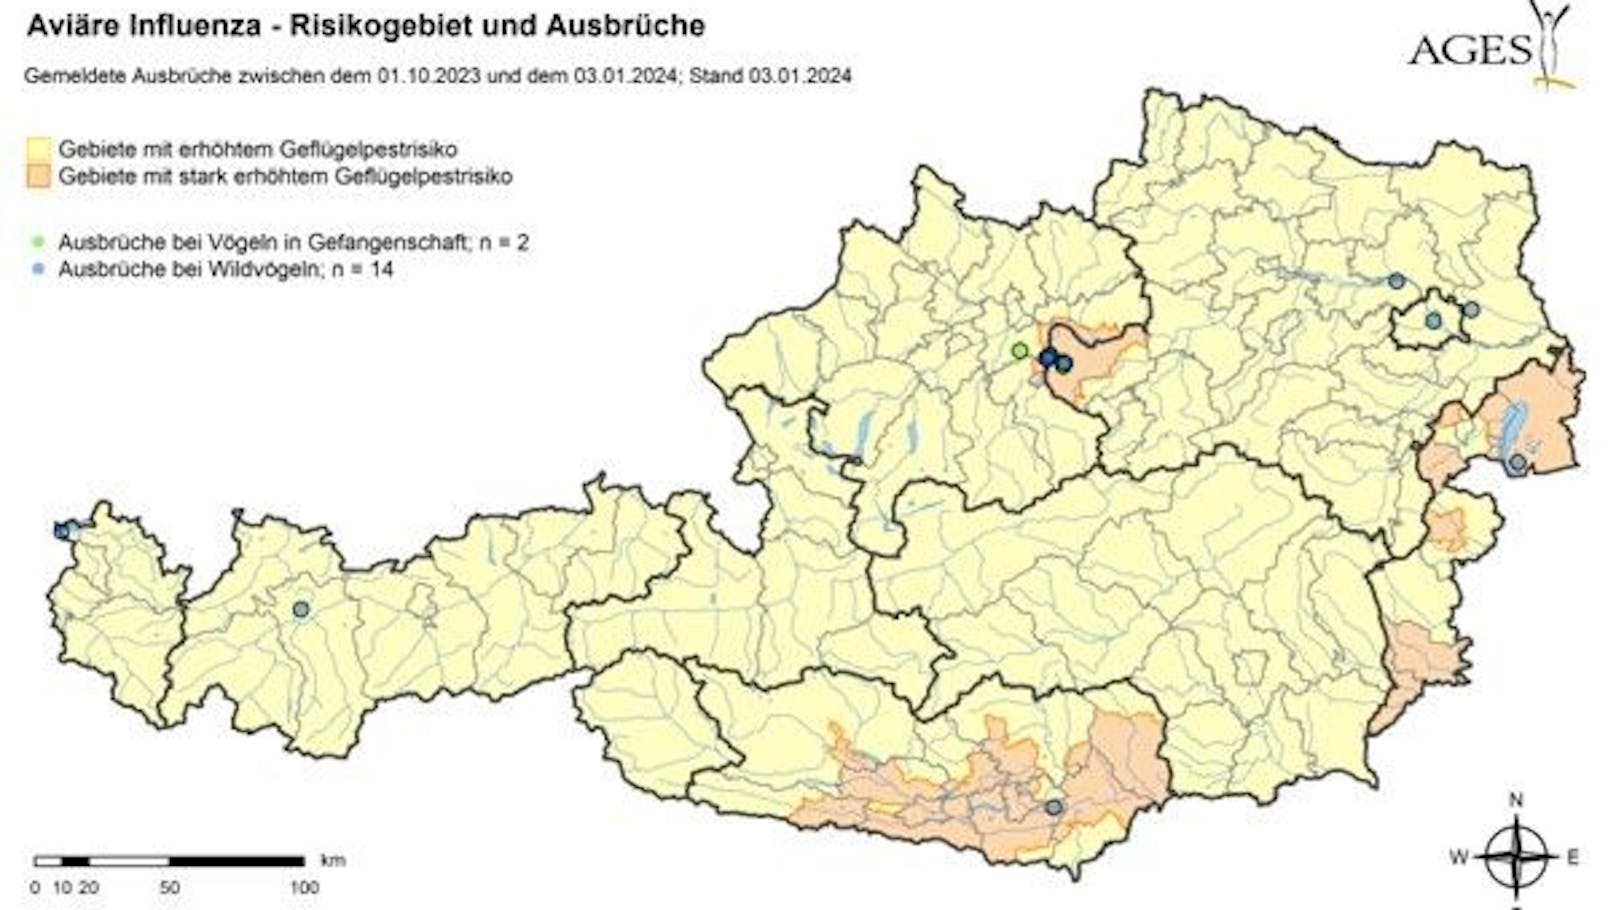 Ganz Österreich ist derzeit ein Risikogebiet für die Vogelgrippe.